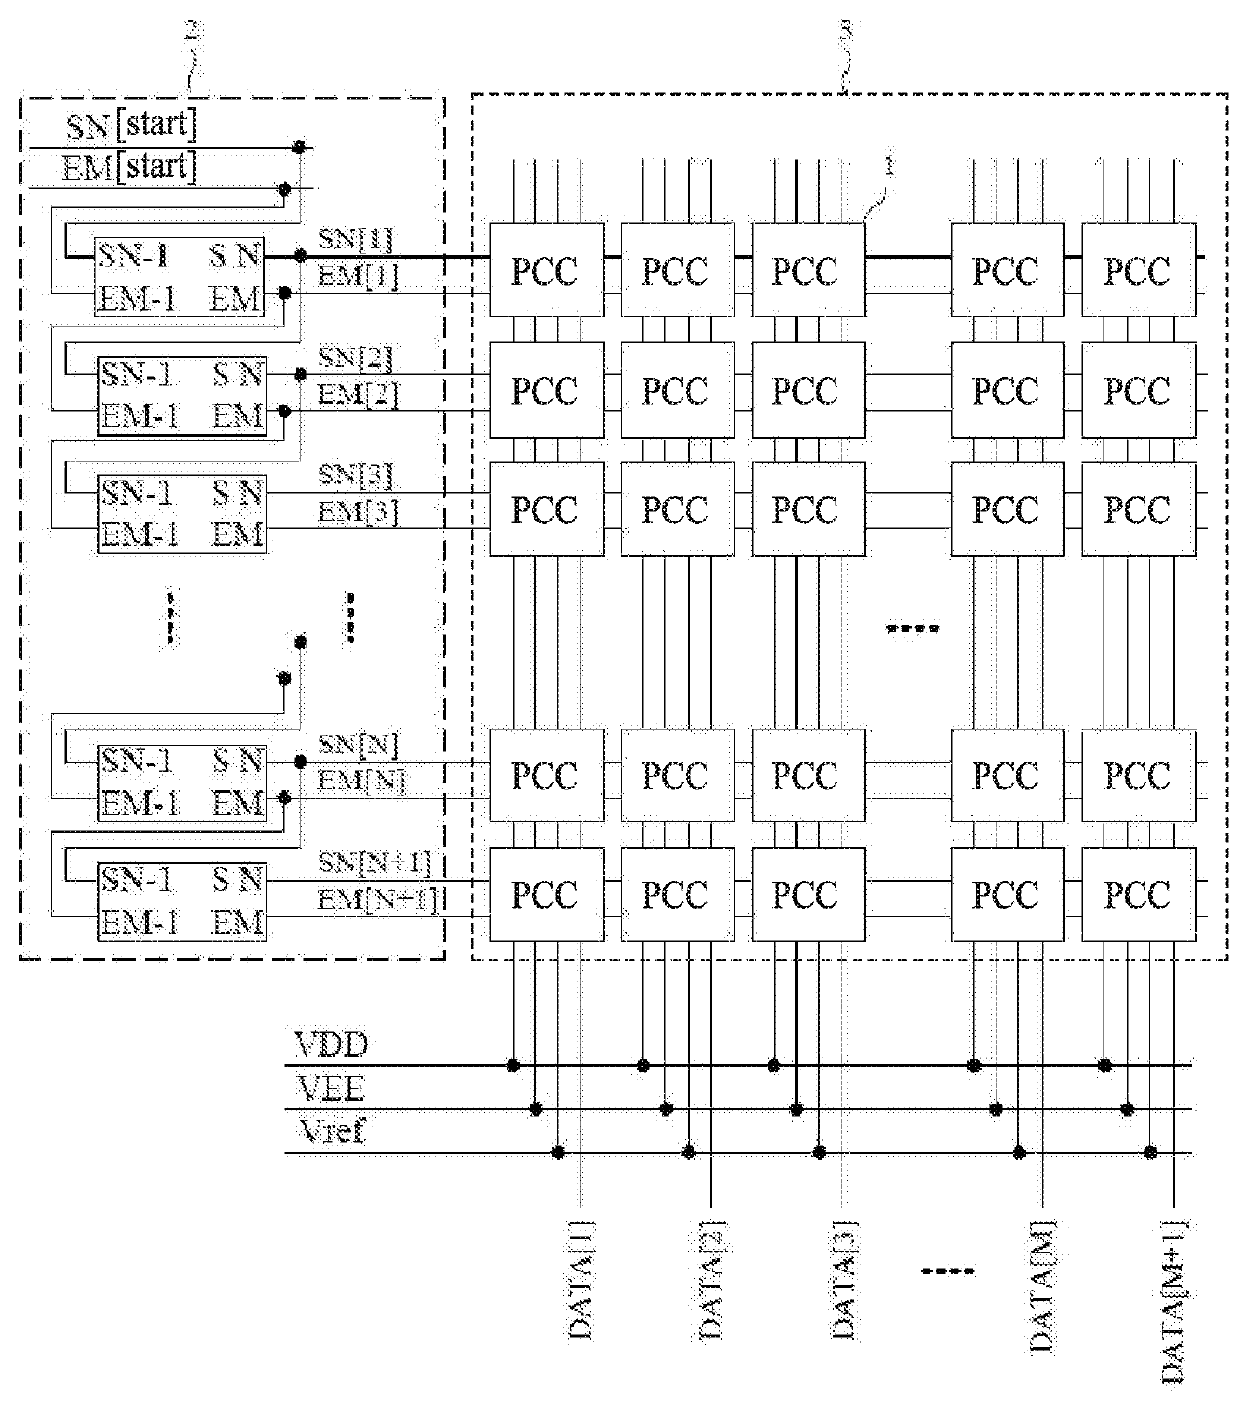 Pixel compensation circuit